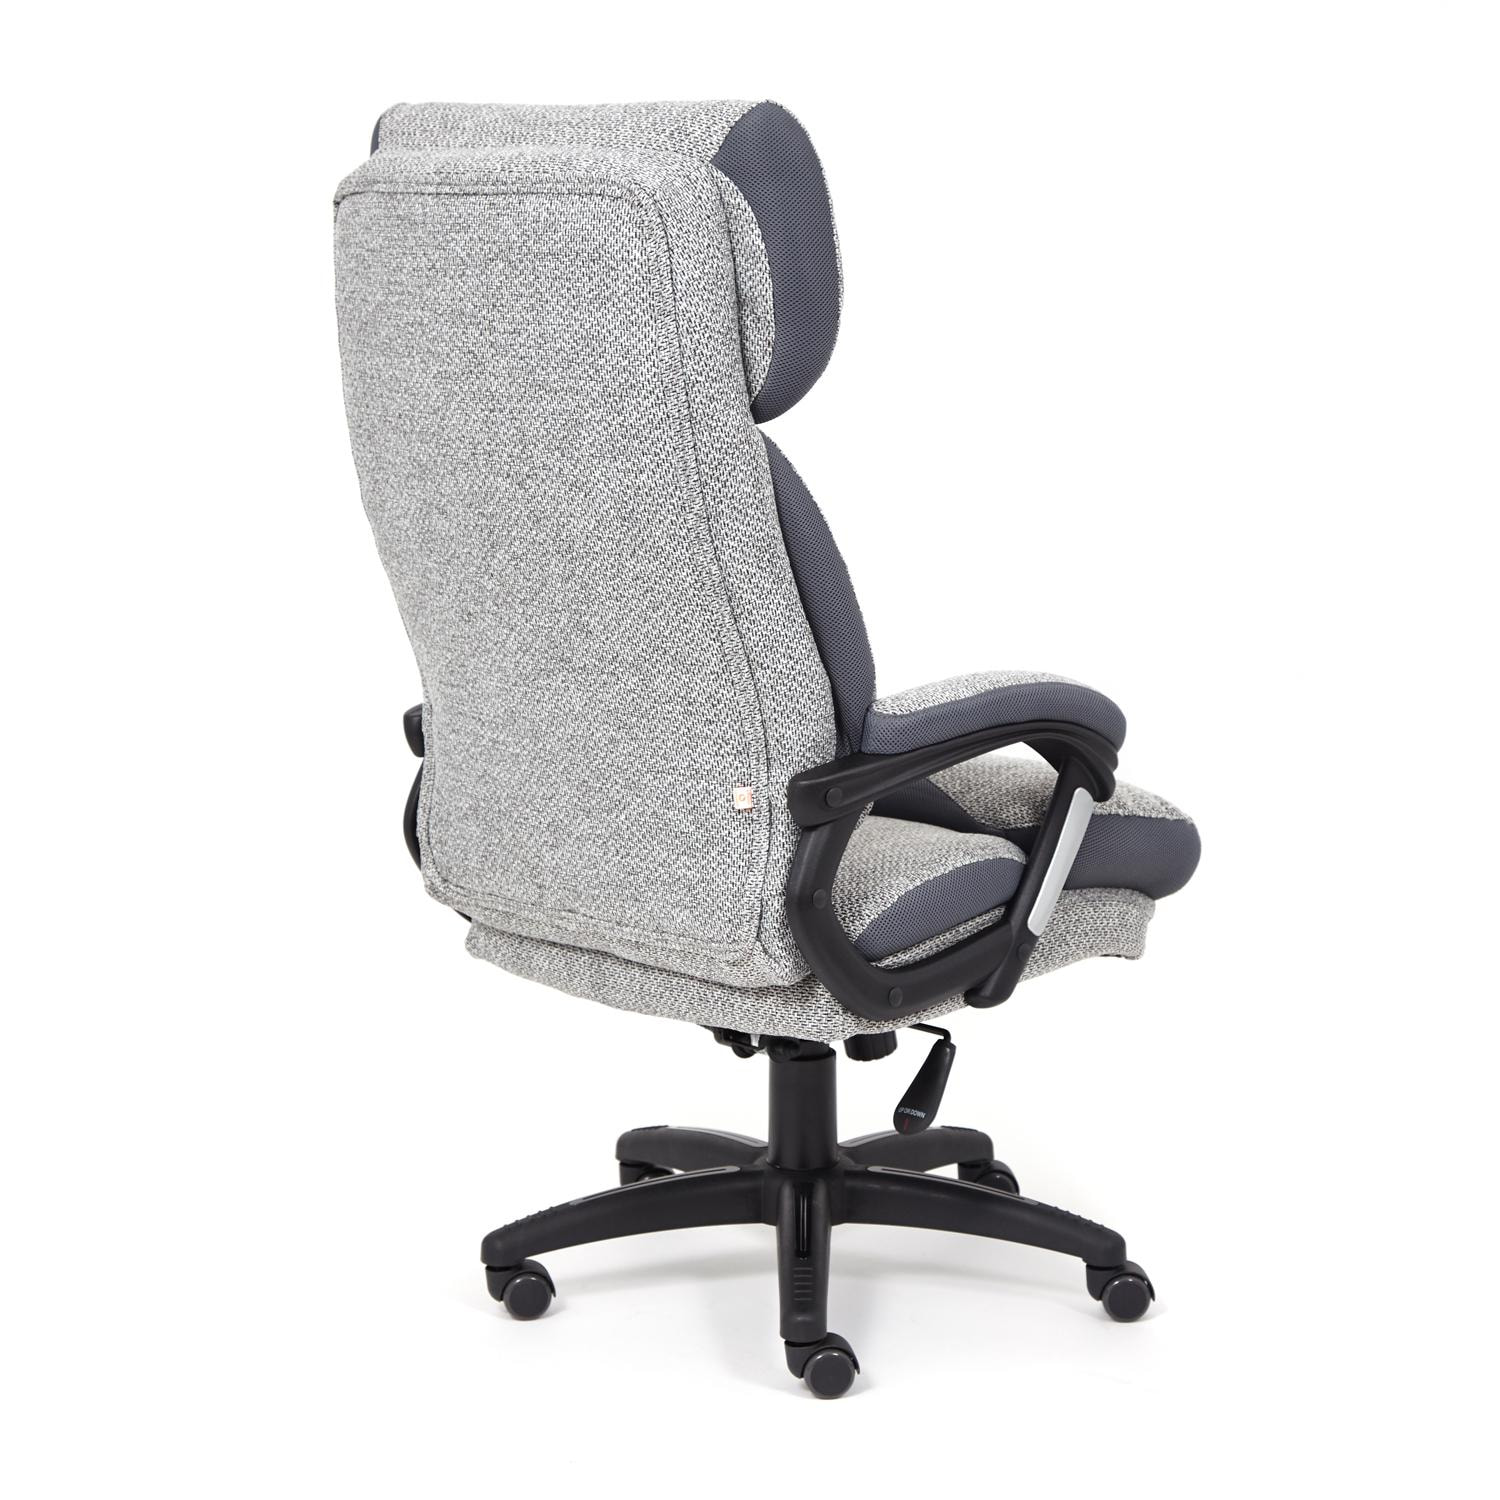 Кресло DUKE ткань, серый/серый, MJ190-21/TW-12